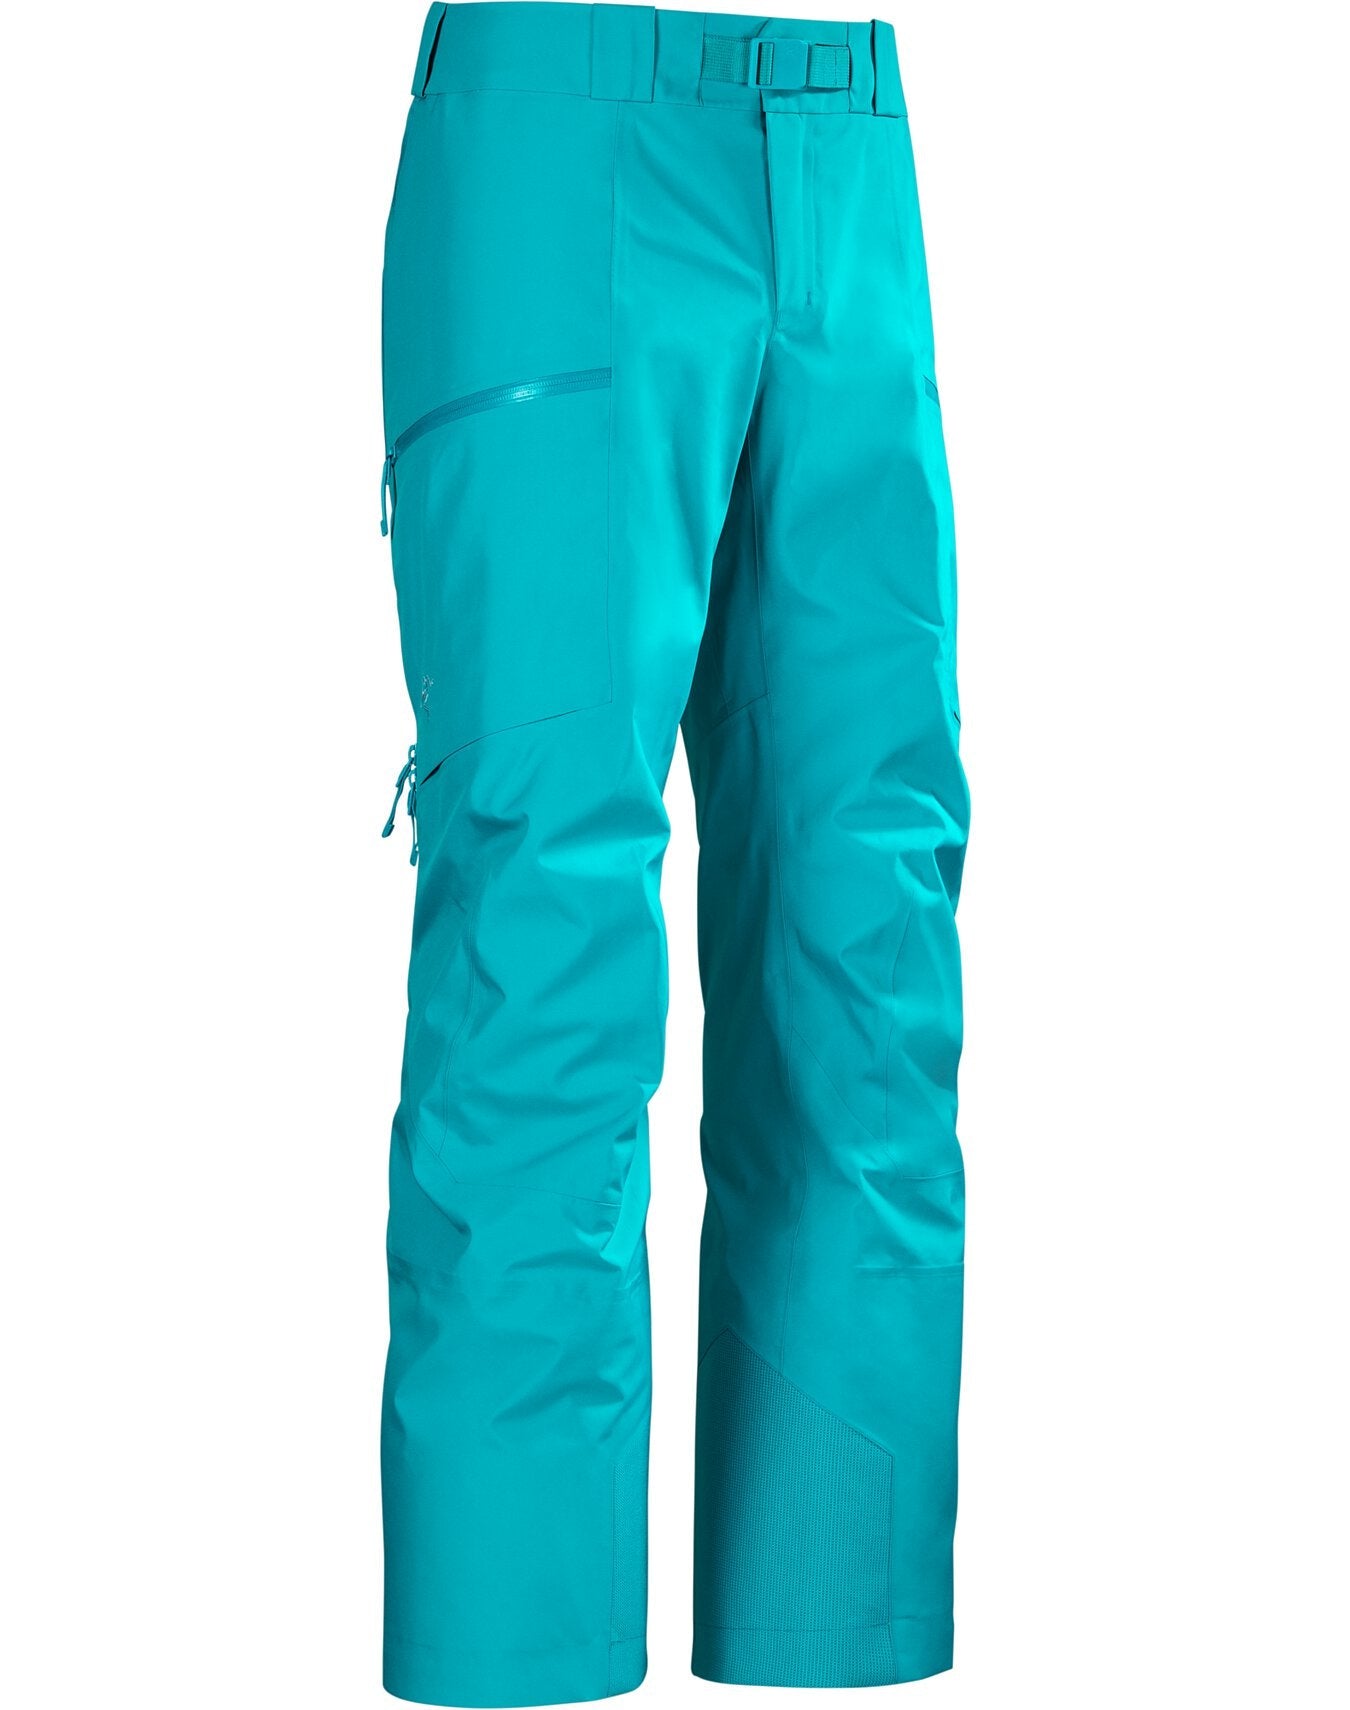 Arc'teryx Men's Sabre Ski Pants (Past Season)